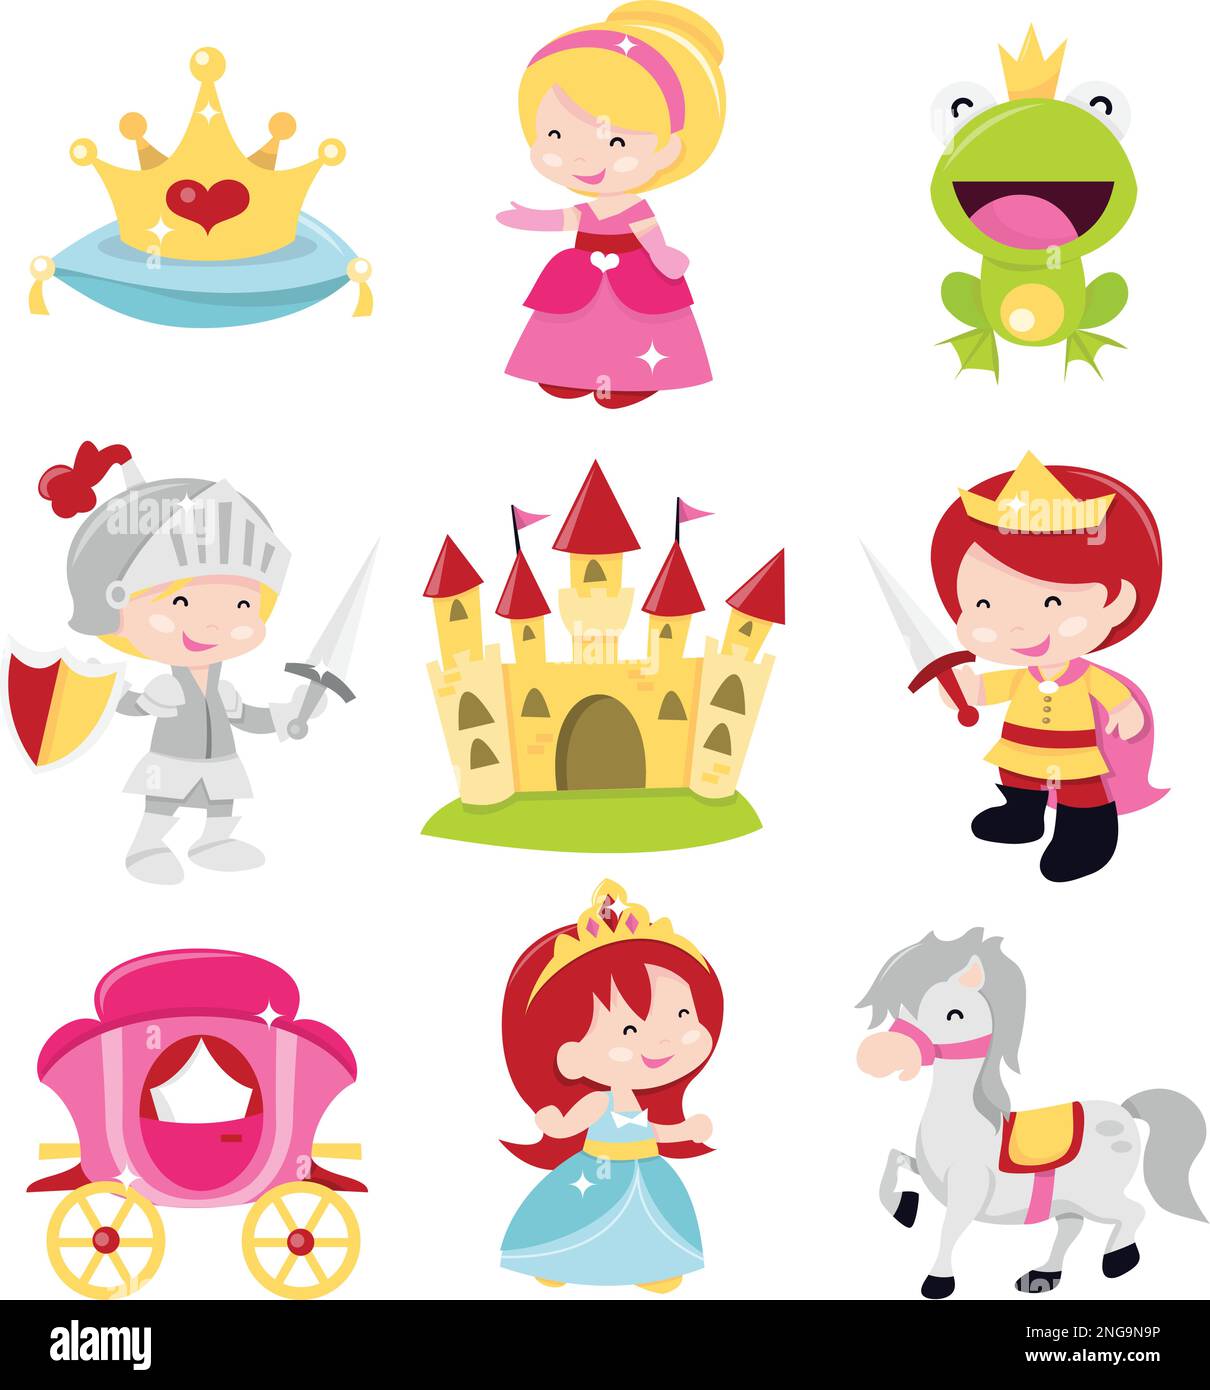 Ein Cartoon-Vektor mit niedlichen und lustigen Prinzessinnen, Prinzen und Rittern. In diesem Set enthalten: Krone, Prinzessinnen, Froschprinz, kn Stock Vektor